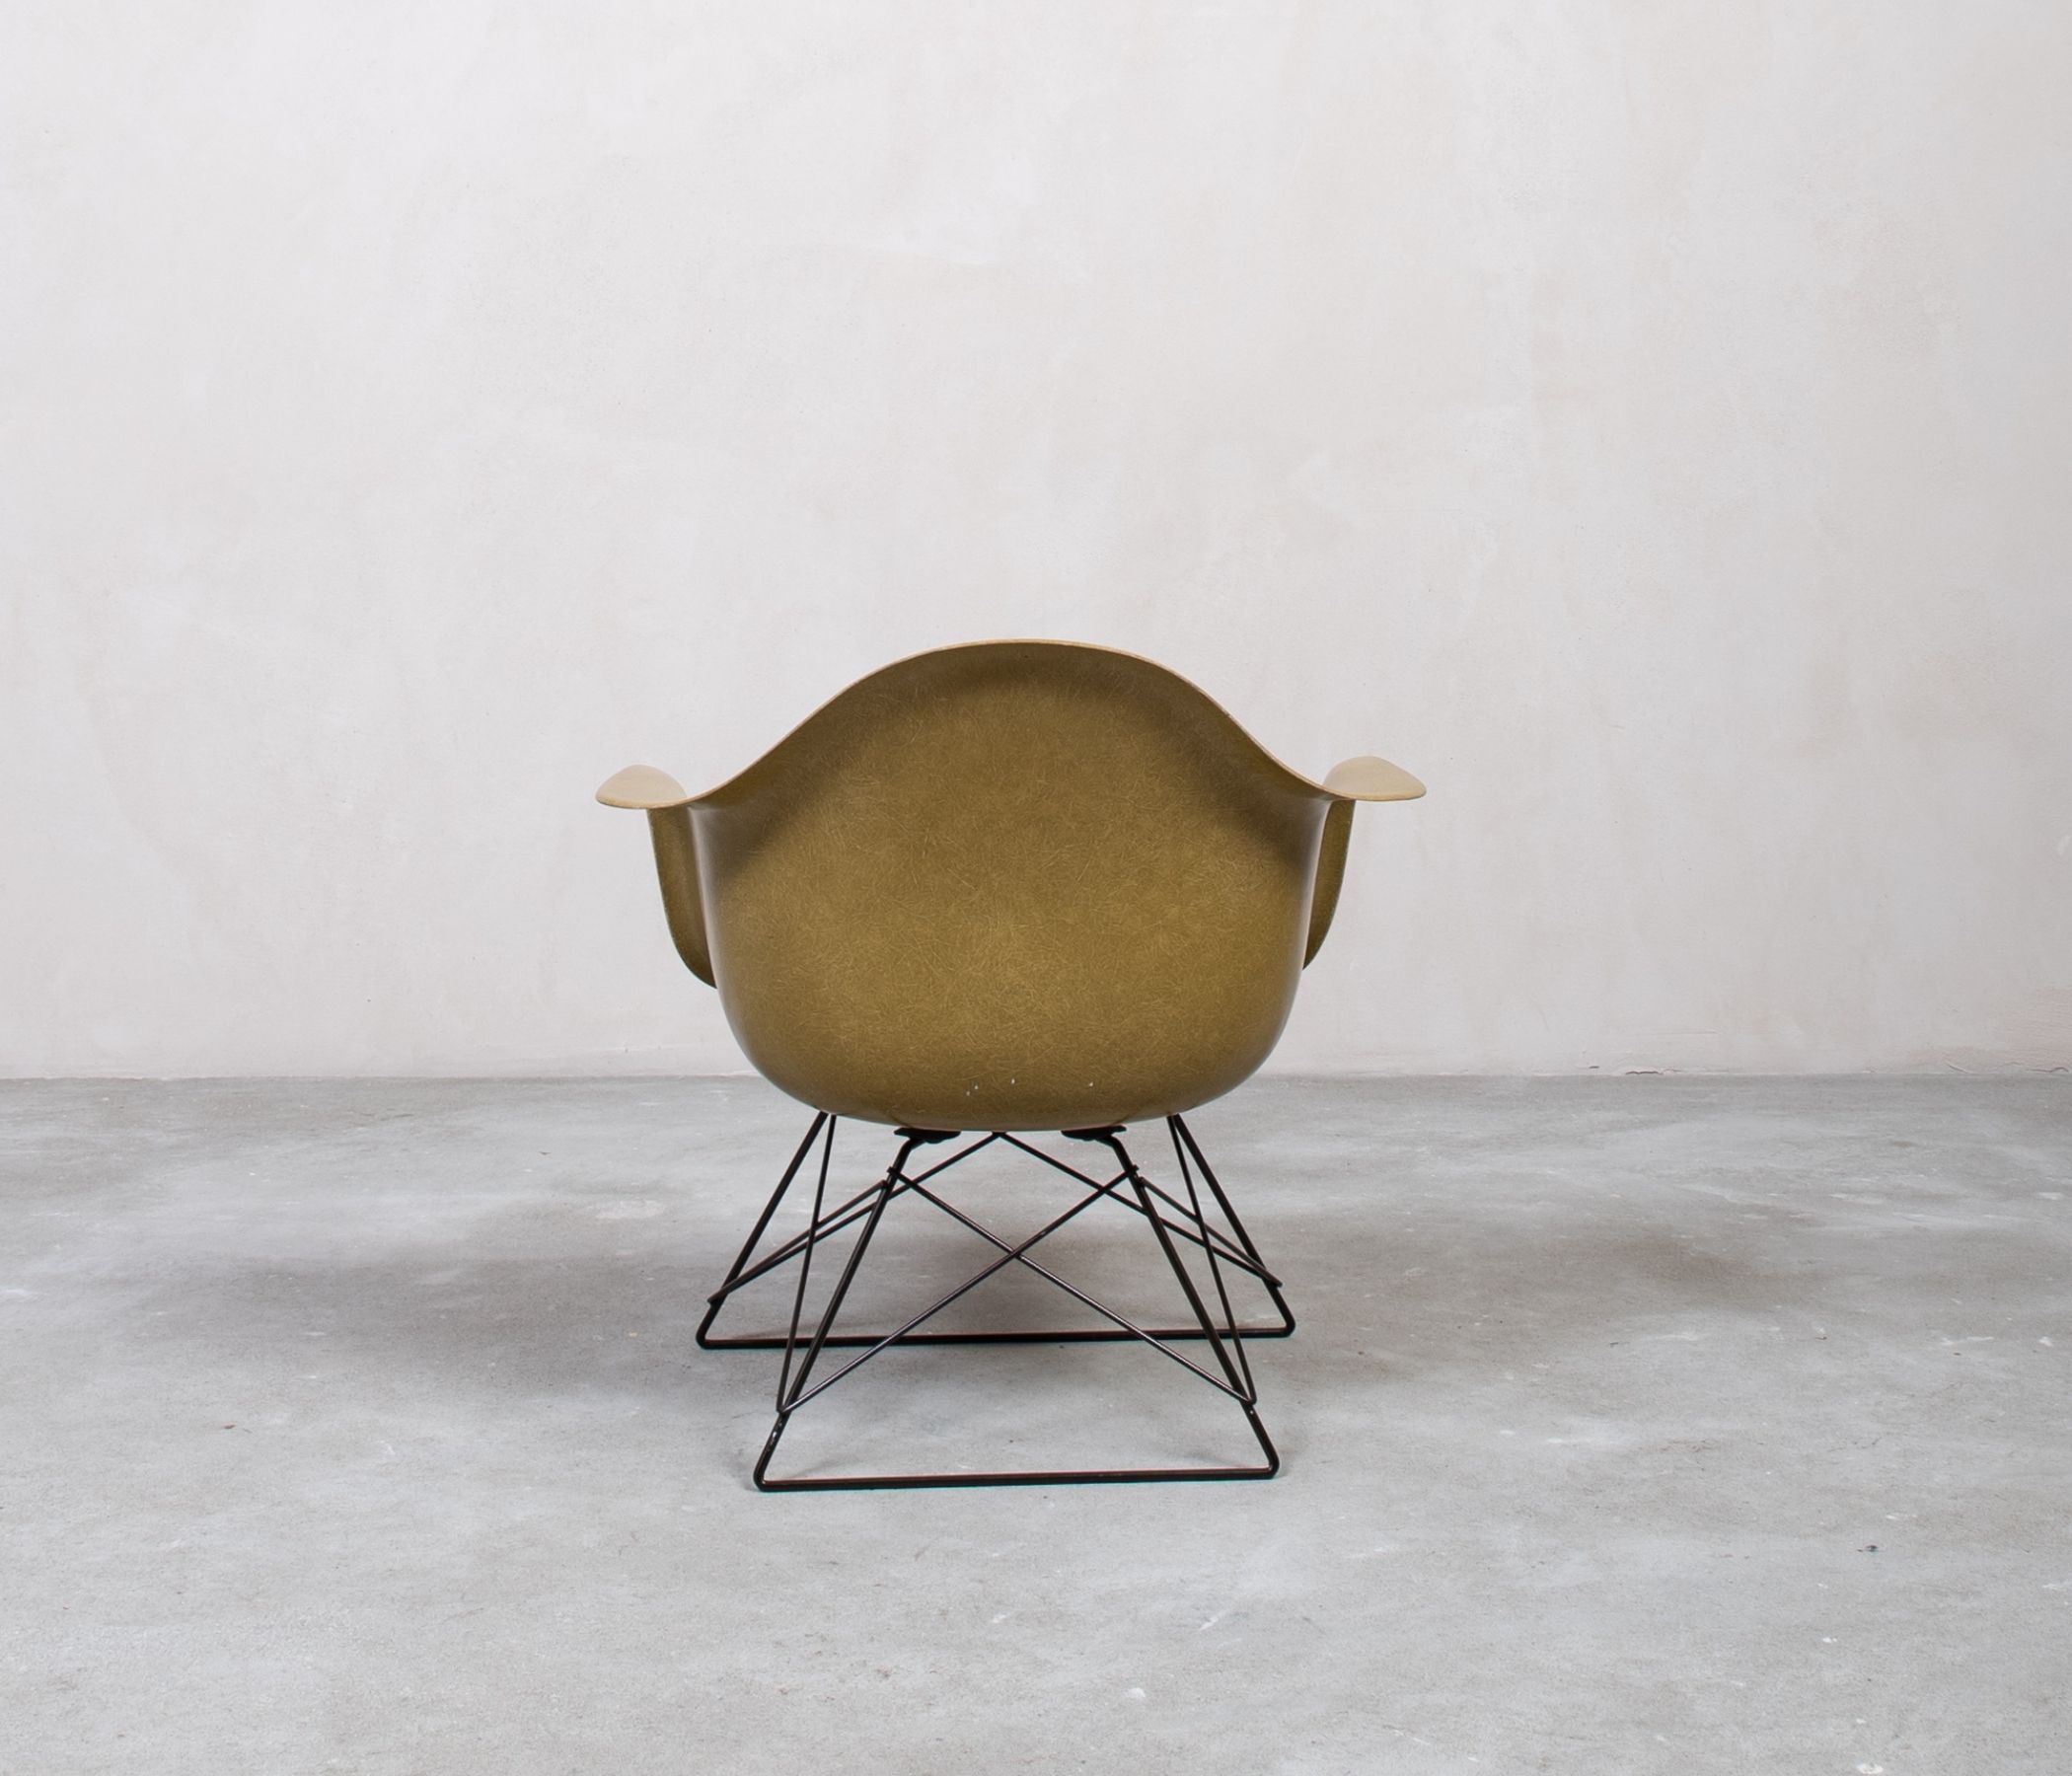 Eames Fiberglass LAR Chair by Herman Miller Khaki